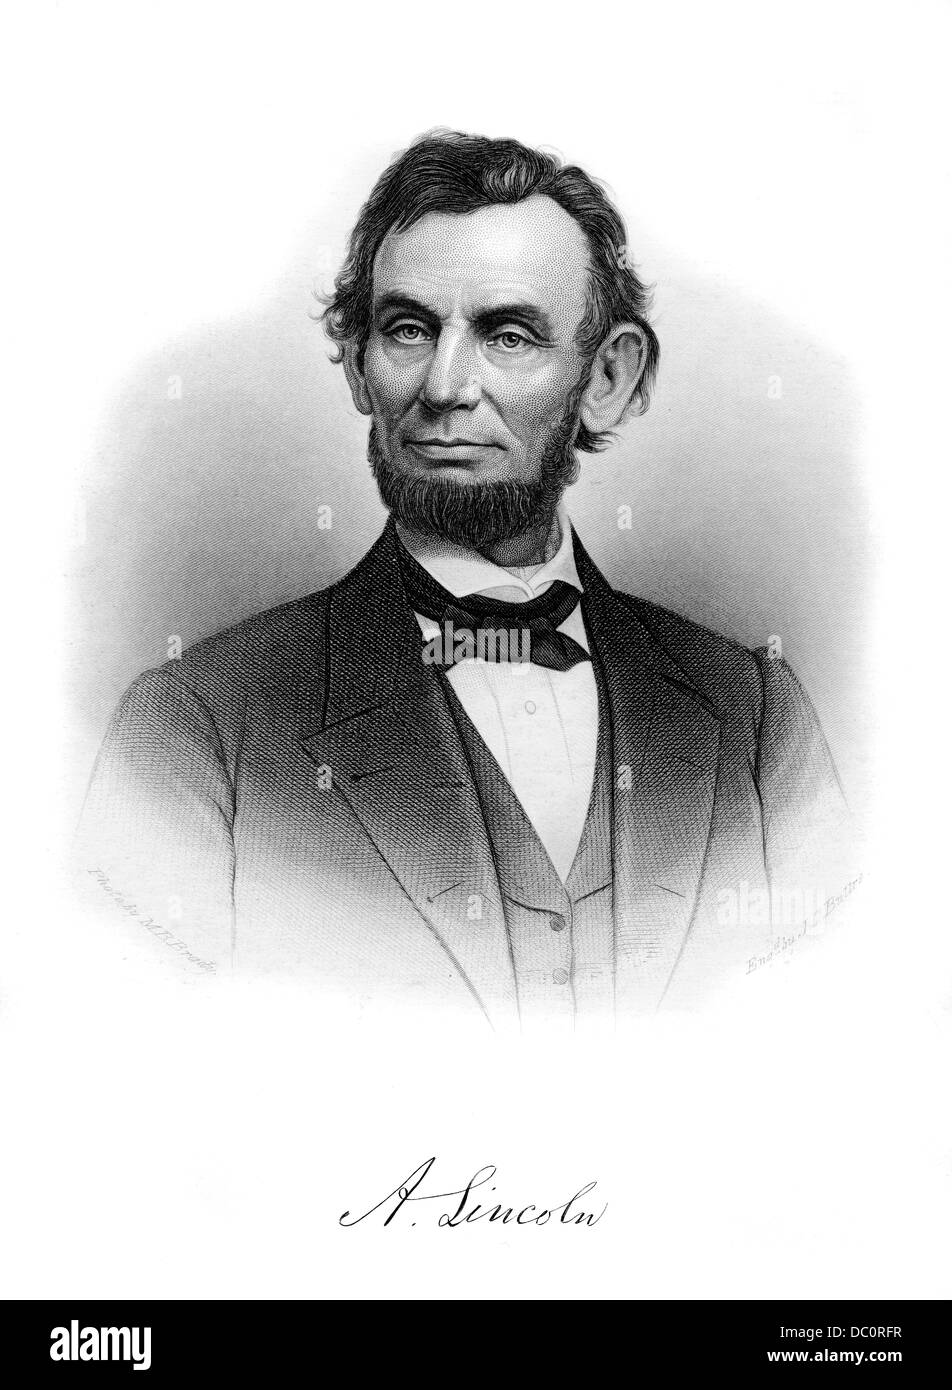 DER 1800ER DER 1860ER JAHRE 1862 PORTRÄT ABRAHAM LINCOLN 16. PRÄSIDENT DER VEREINIGTEN STAATEN VON AMERIKA Stockfoto